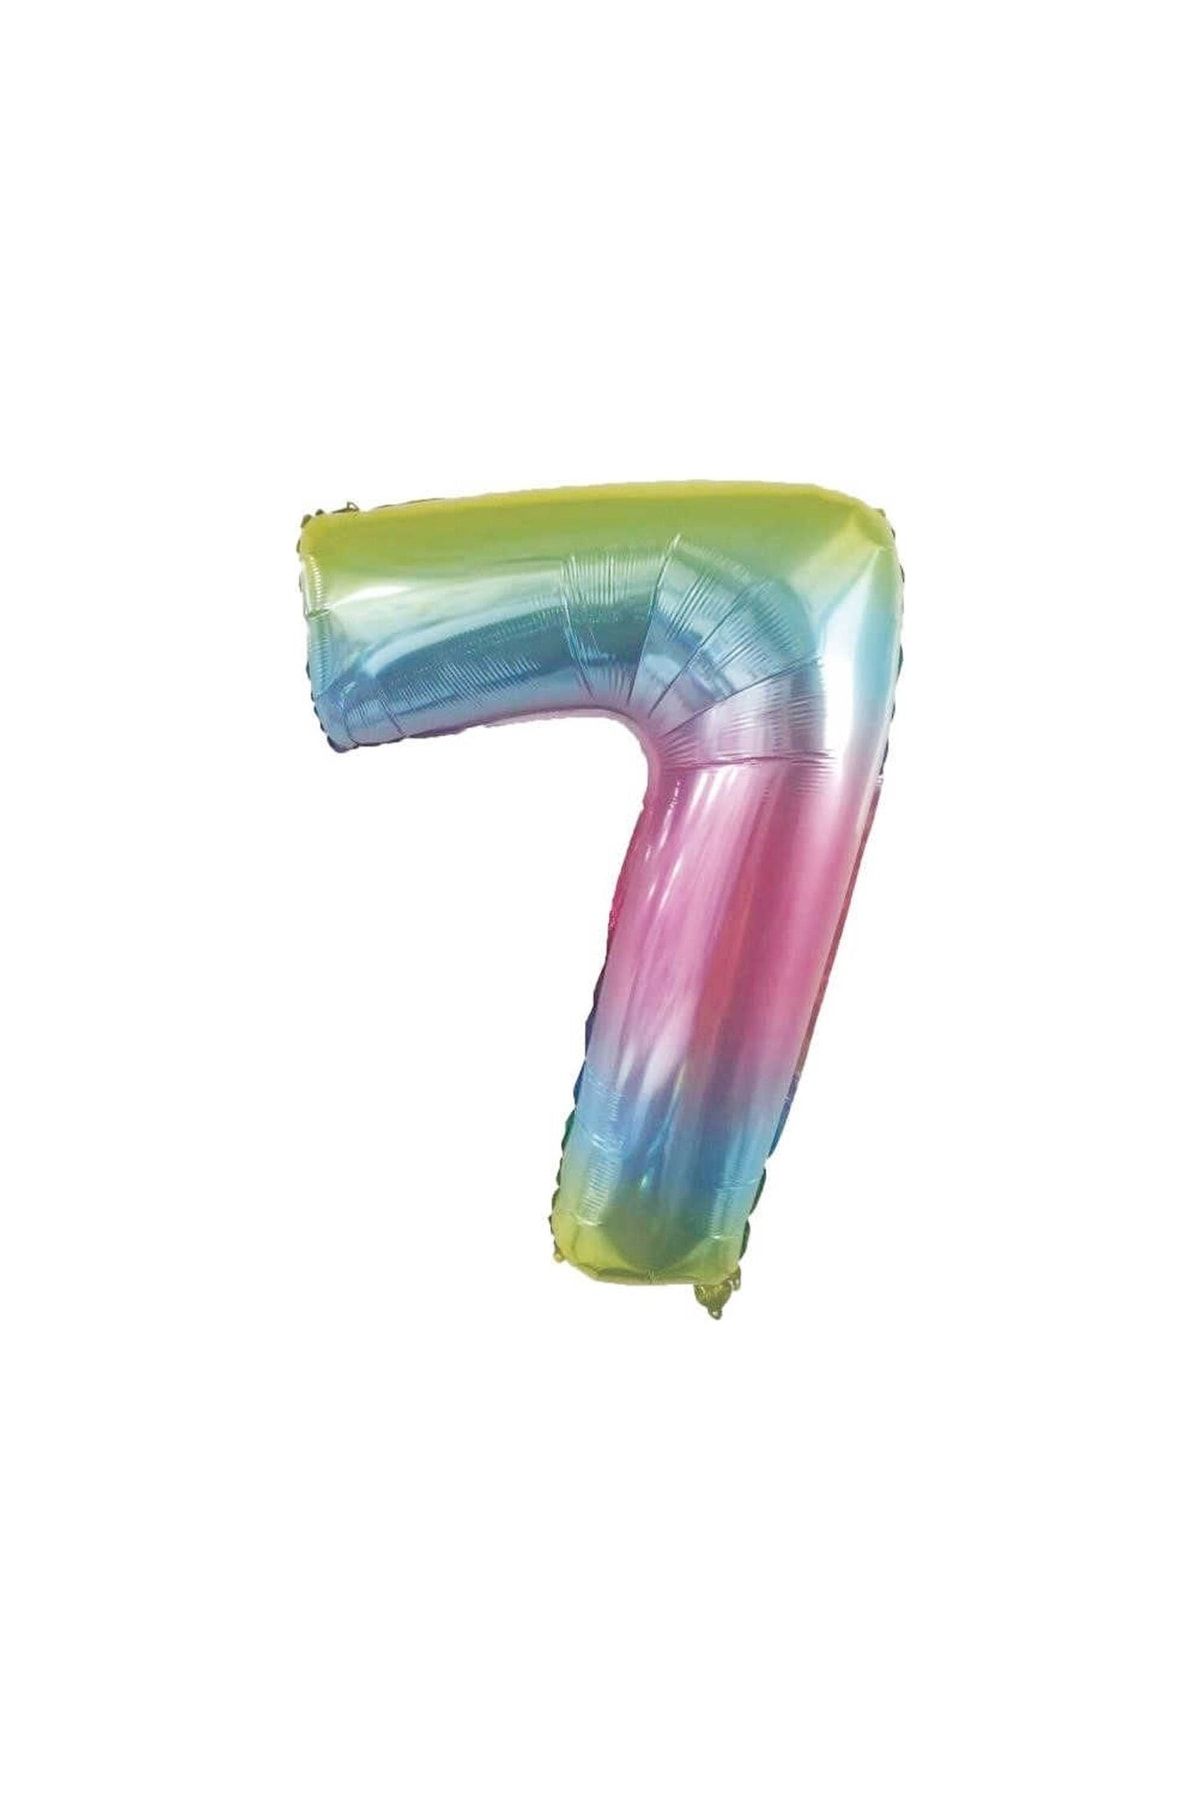 HKNYS 7 Yaş -rakam Sayı Folyo Balon 100 Cm Rengarenk -gökkuşağı Renkli Folyo Balon-helyum Gazı Uyumludur